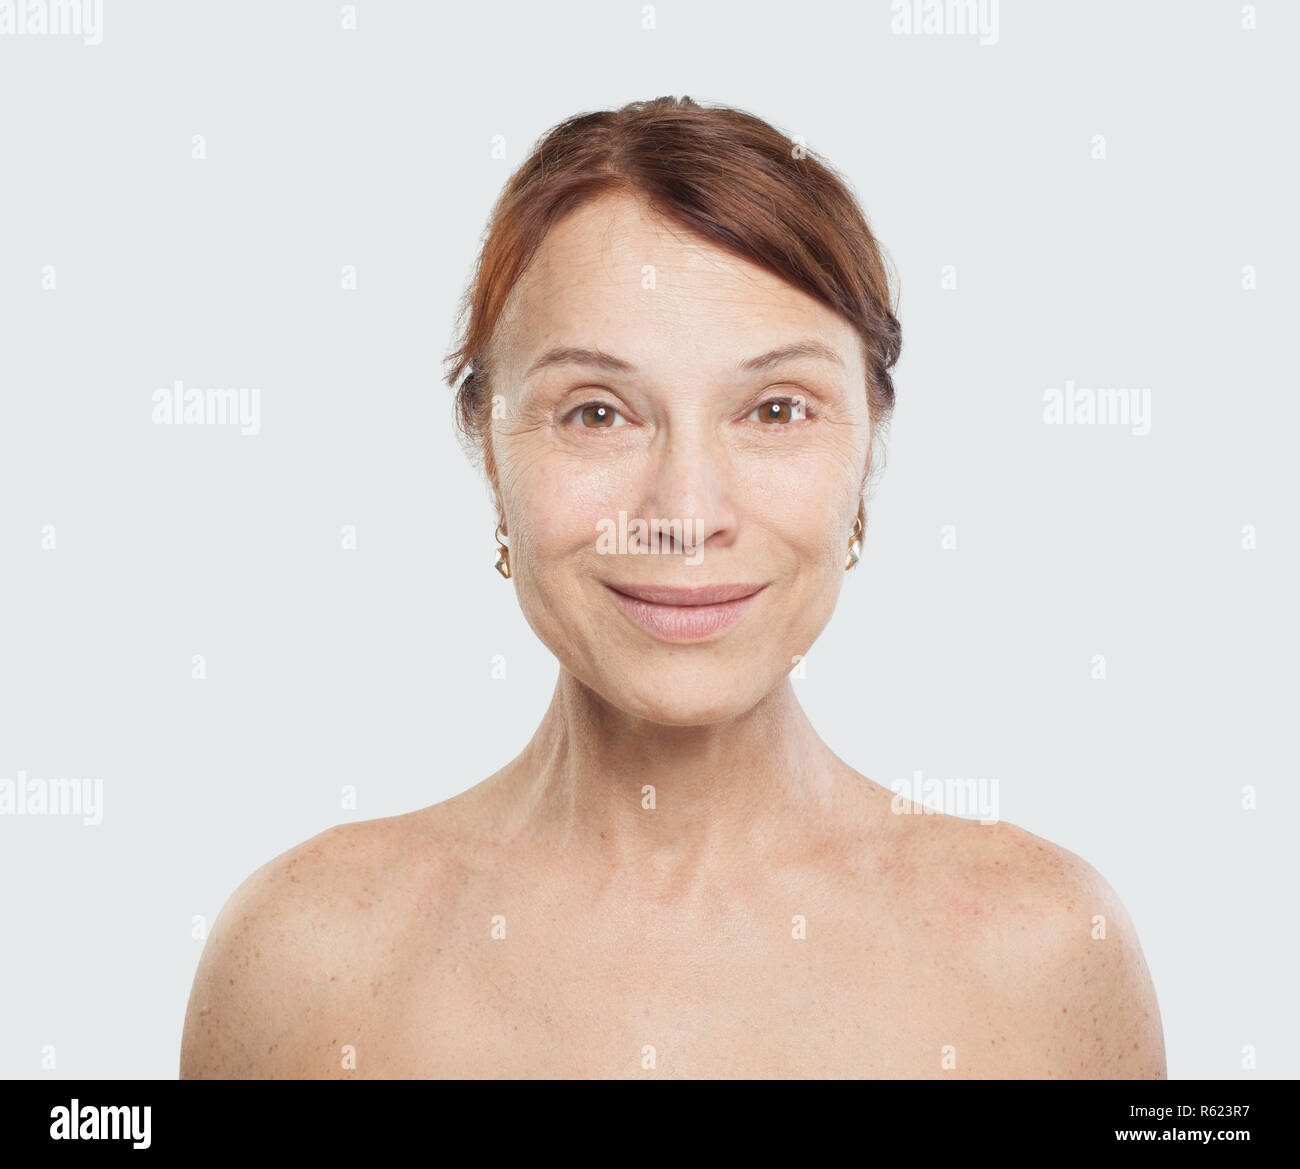 Perfekte reife Frau lächelnd. Gesichtsbehandlung, Kosmetik, ästhetische Medizin und plastische Chirurgie Stockfoto